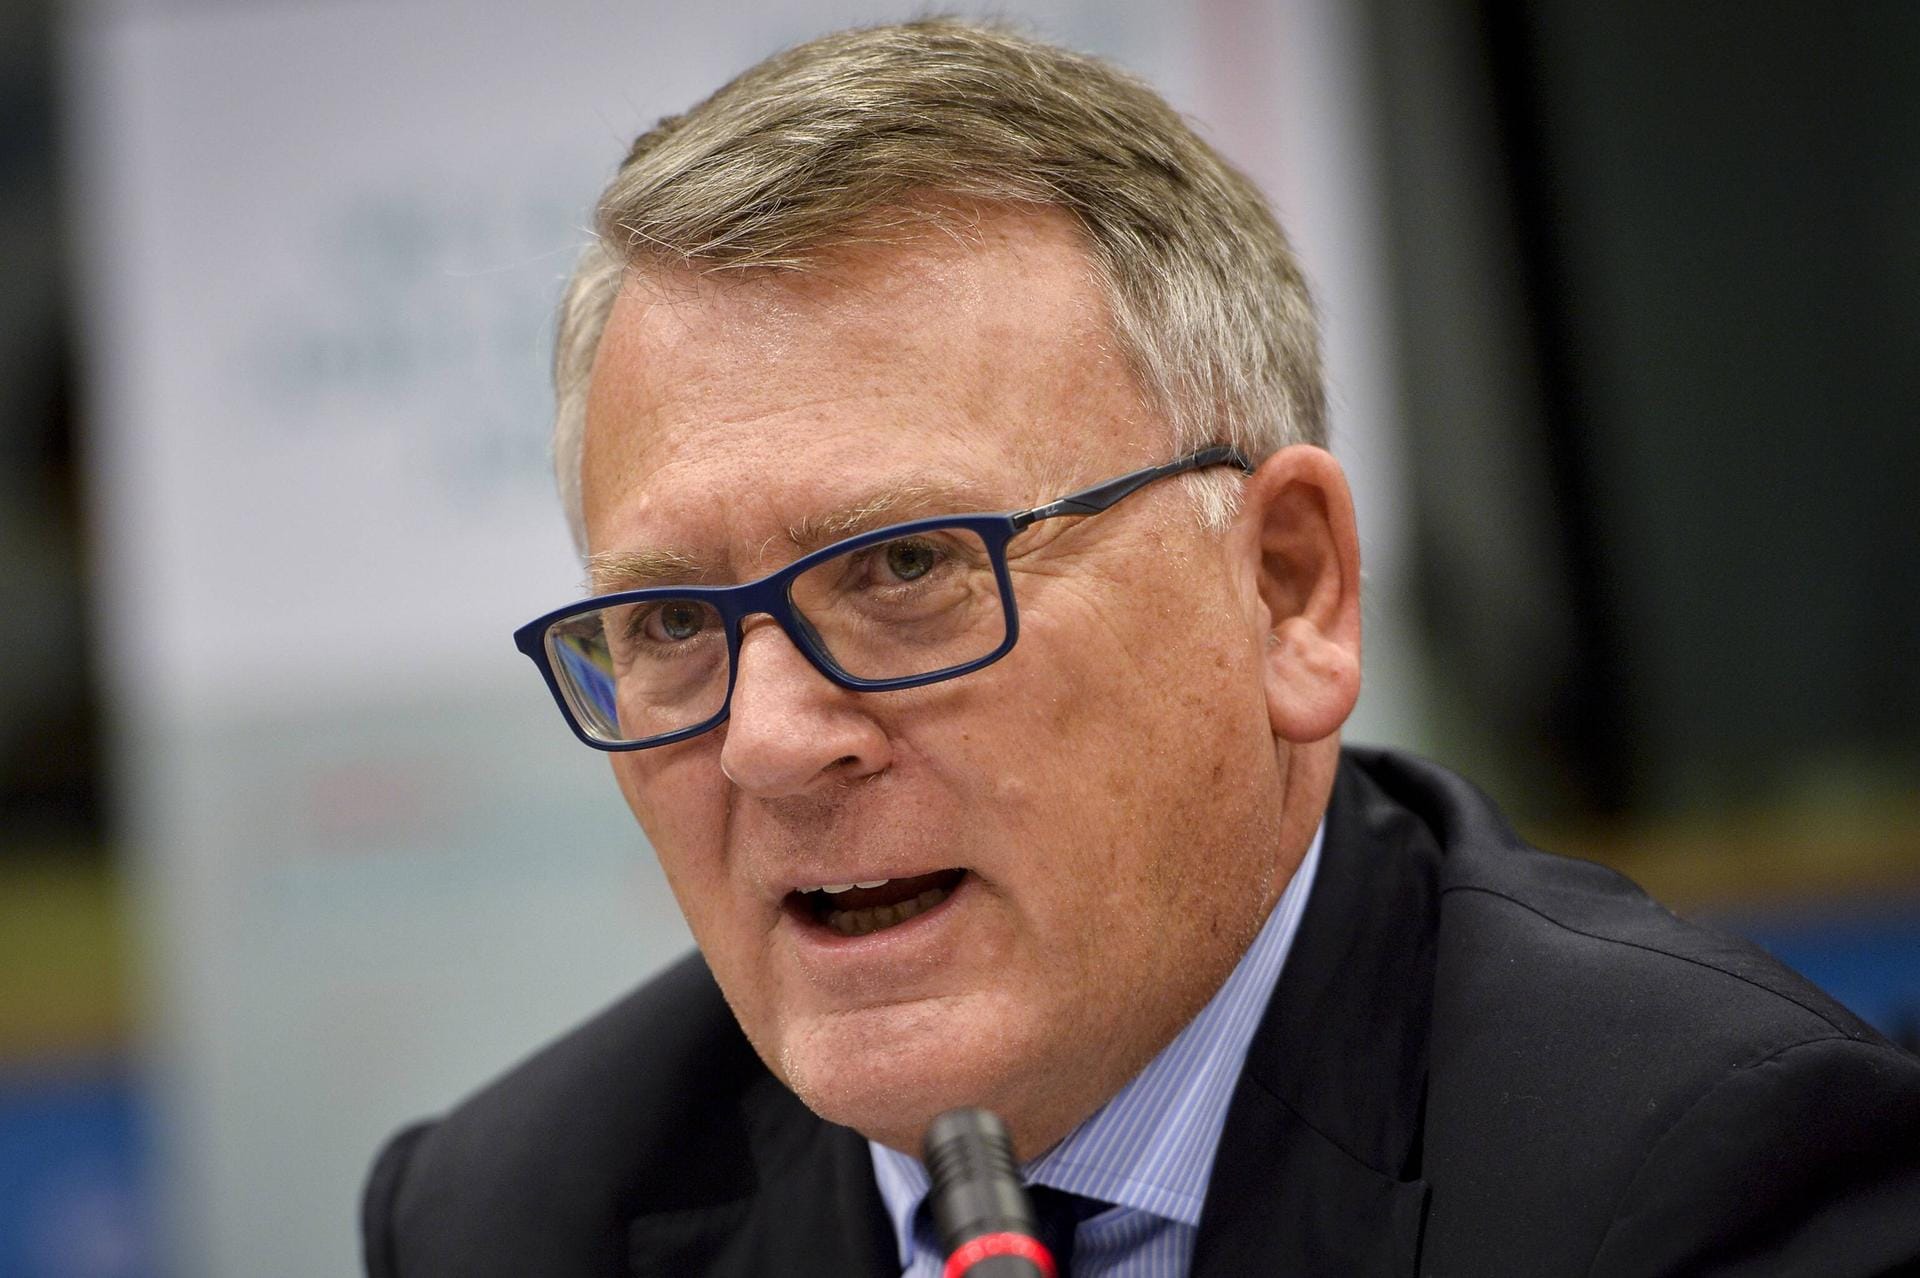 Nicolas Schmit aus Luxemburg ist zuständig für Beschäftigung: Der Sozialdemokrat (65) war Luxemburgs Botschafter bei der EU und von 2009 bis 2018 Arbeitsminister. Im Mai 2019 wurde er ins Europaparlament gewählt.